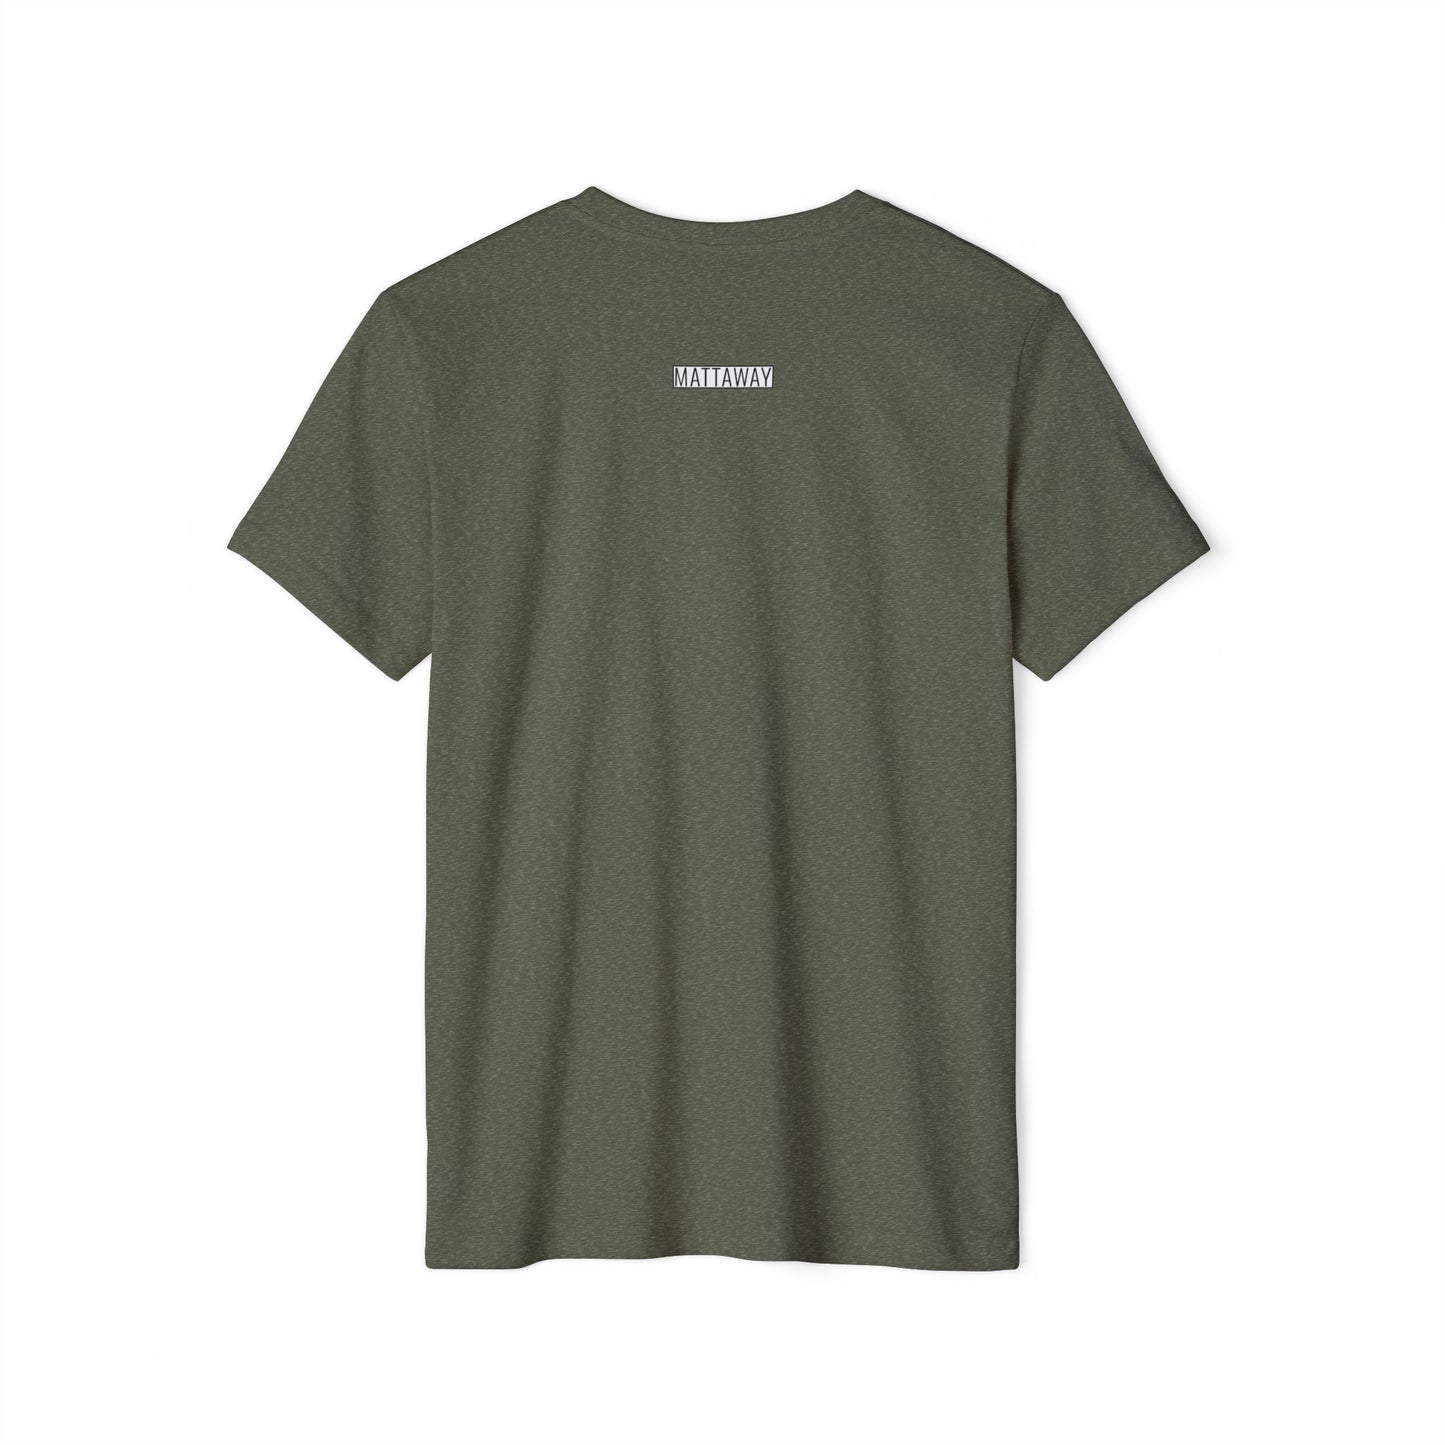 MINIMAL SHAPES 105 - Camiseta ecológica reciclada unisex